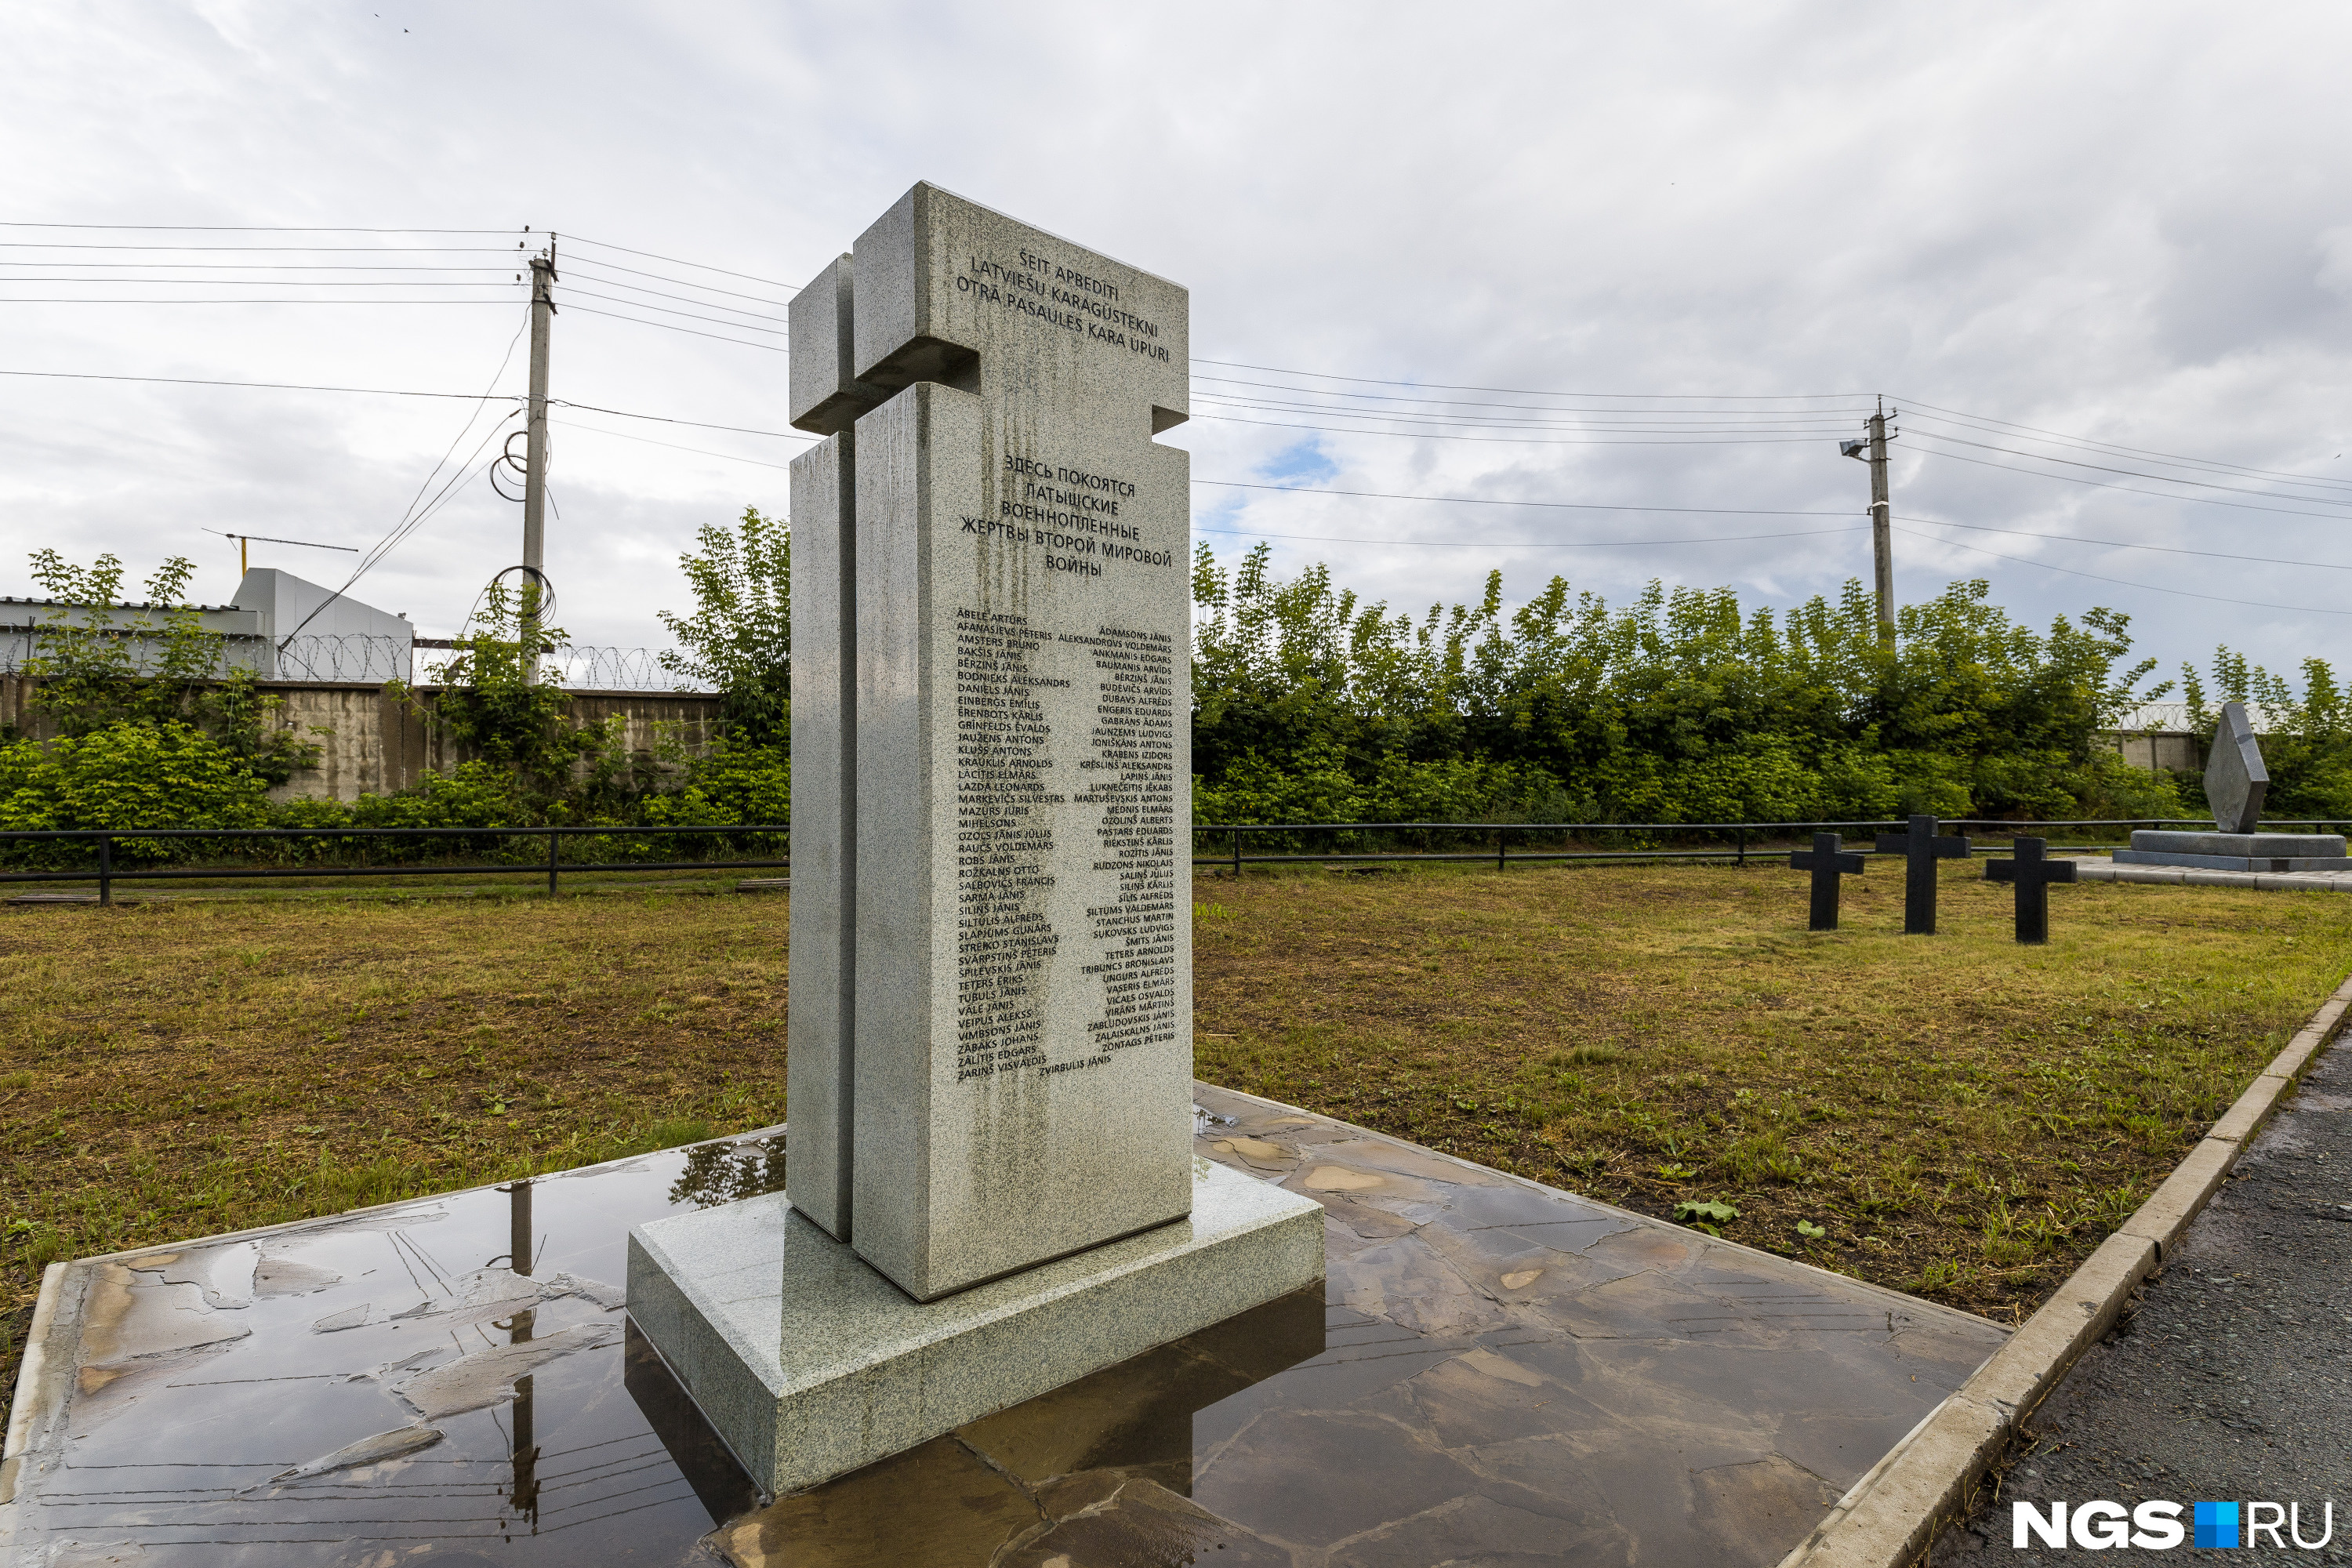 Мемориал латышским военнопленным, на котором написано: «Здесь покоятся латышские военнопленные, жертвы Второй мировой войны»